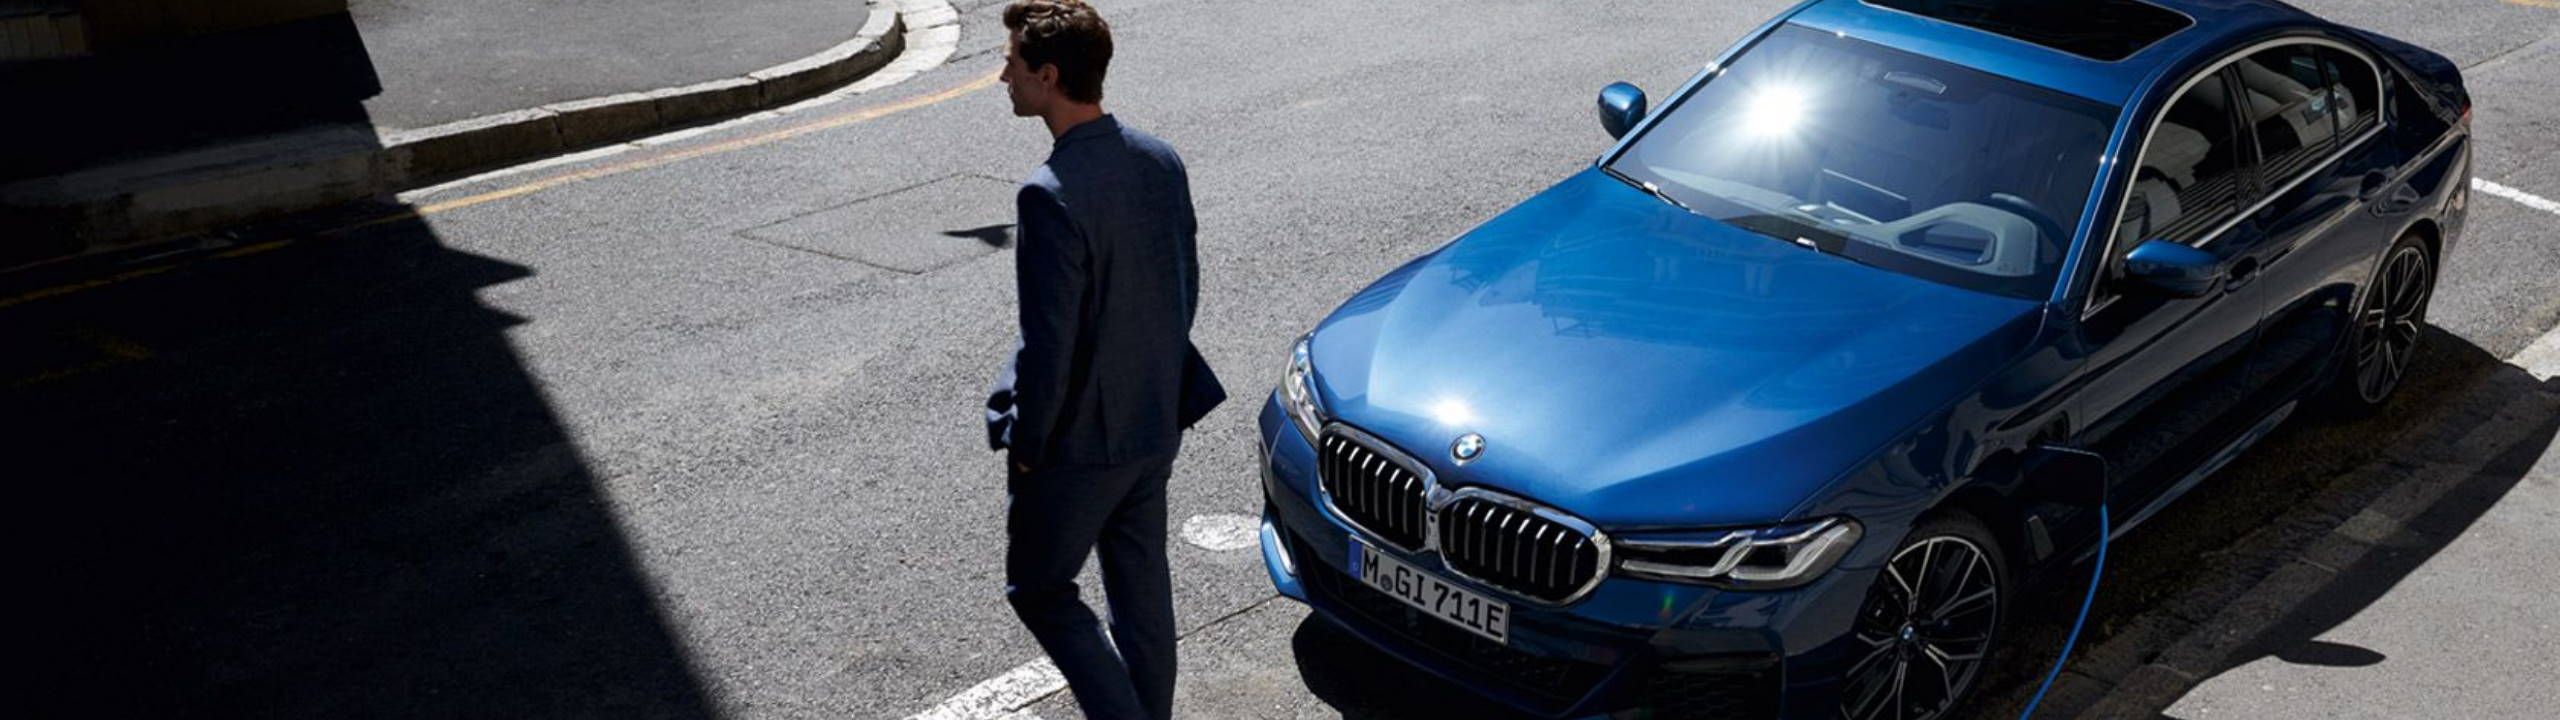 blaue BMW Limousine an Ladekabel angeschlossen